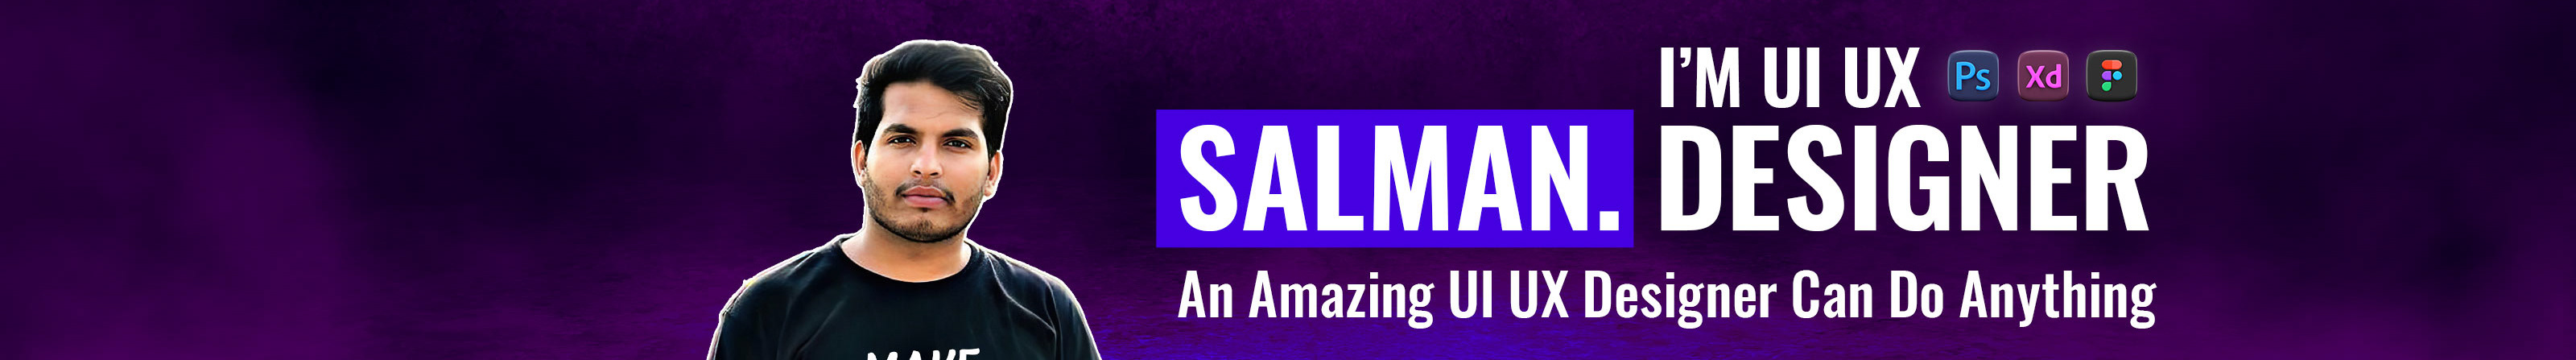 Salman Khan's profile banner